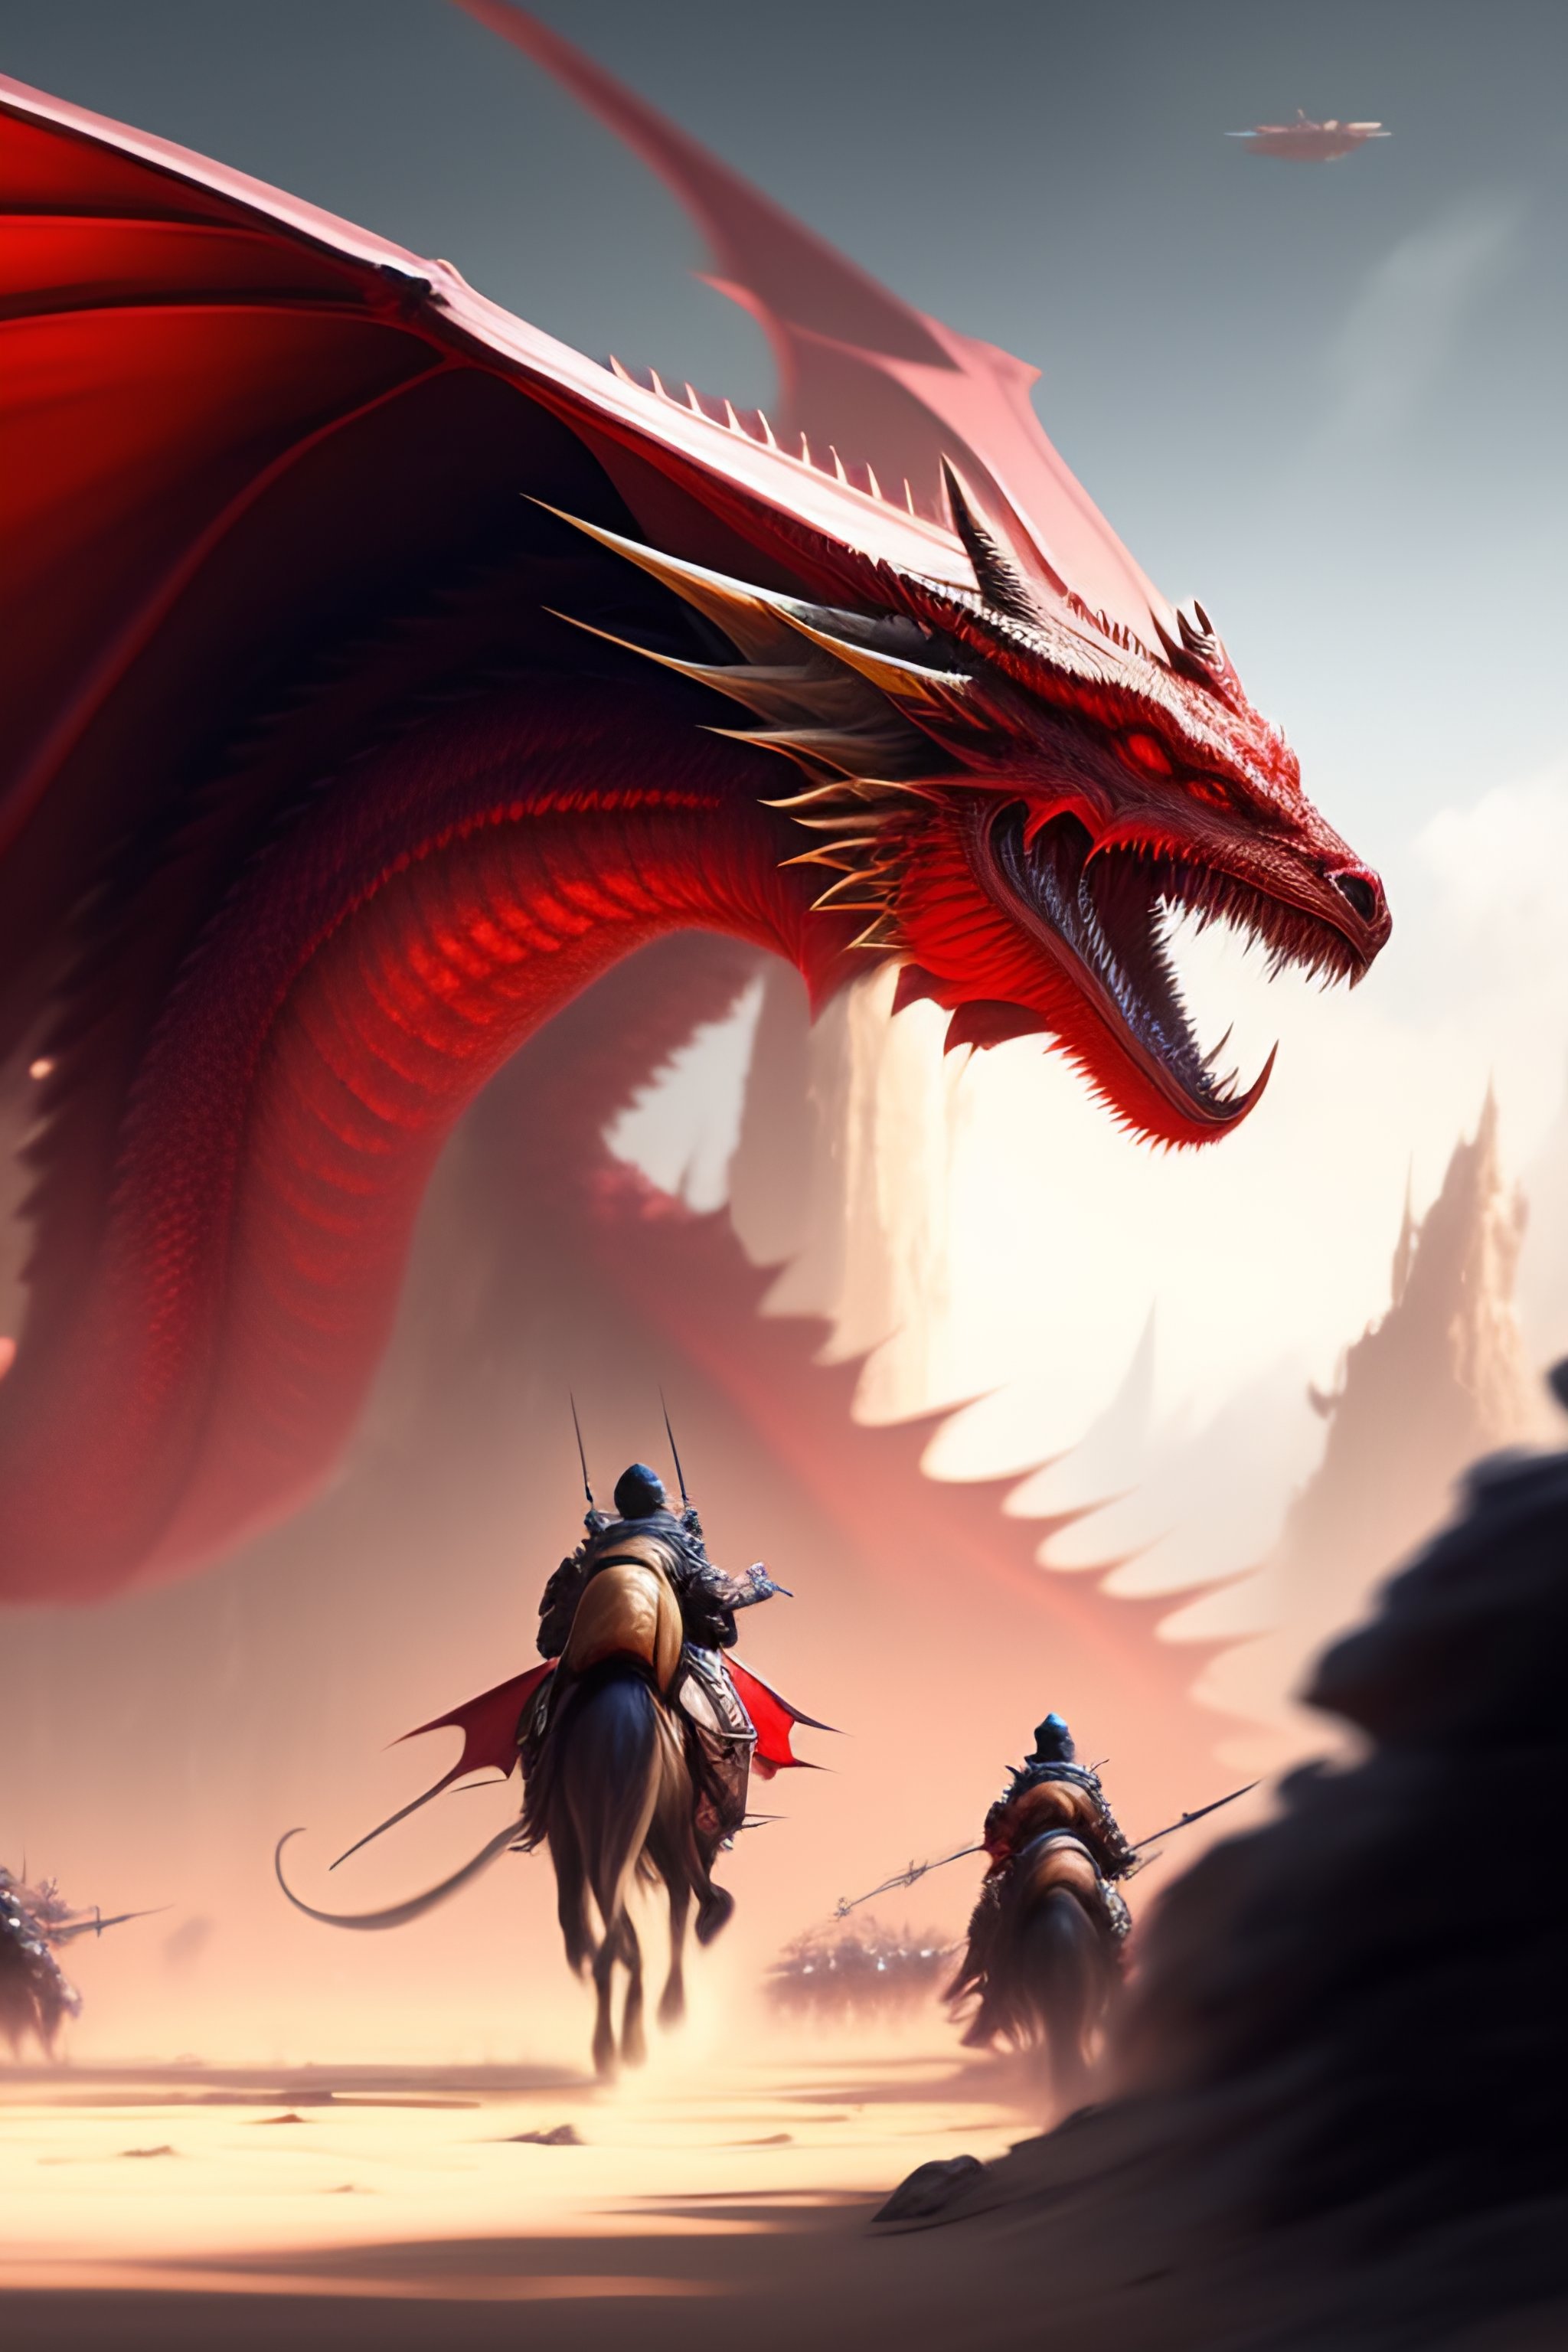 ArtStation - Red Dragon